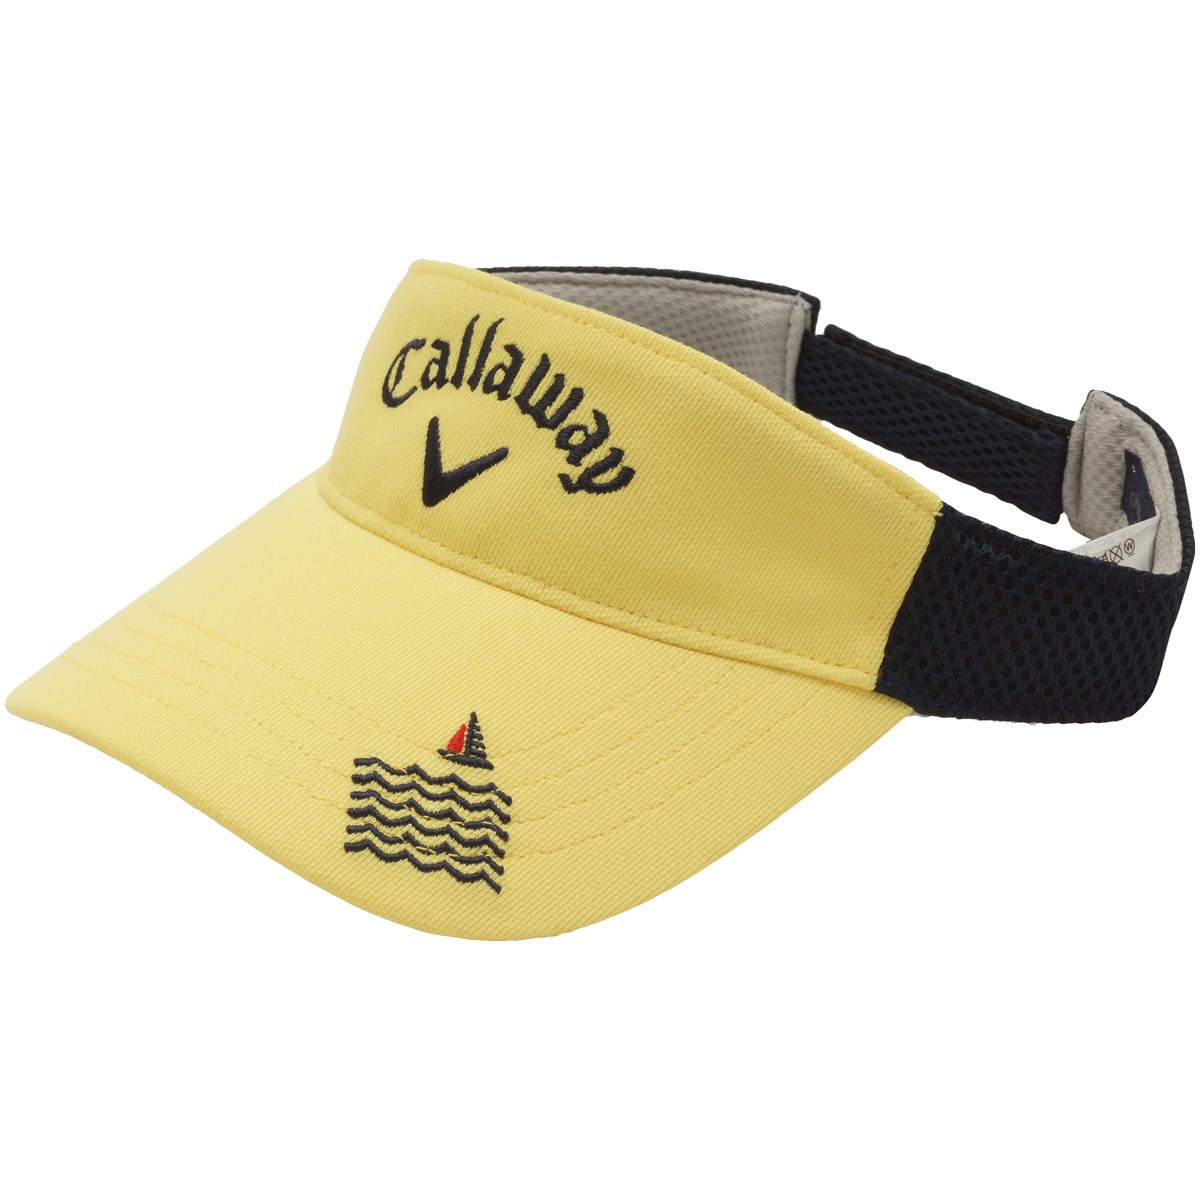 キャロウェイゴルフ(Callaway Golf) サンバイザー 